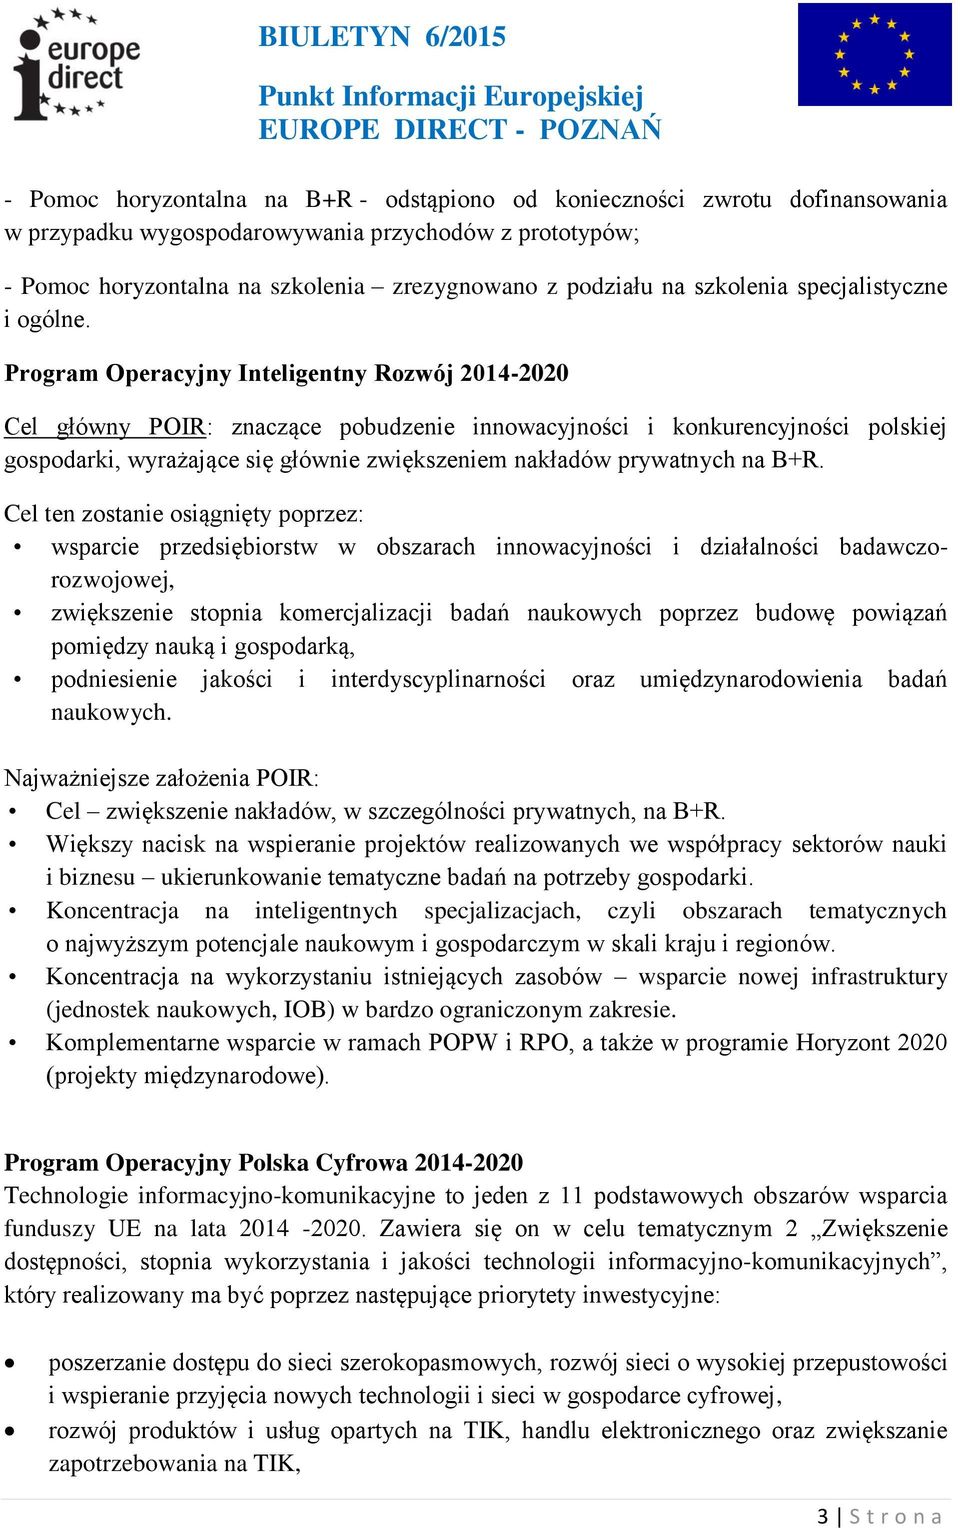 Program Operacyjny Inteligentny Rozwój 2014-2020 Cel główny POIR: znaczące pobudzenie innowacyjności i konkurencyjności polskiej gospodarki, wyrażające się głównie zwiększeniem nakładów prywatnych na